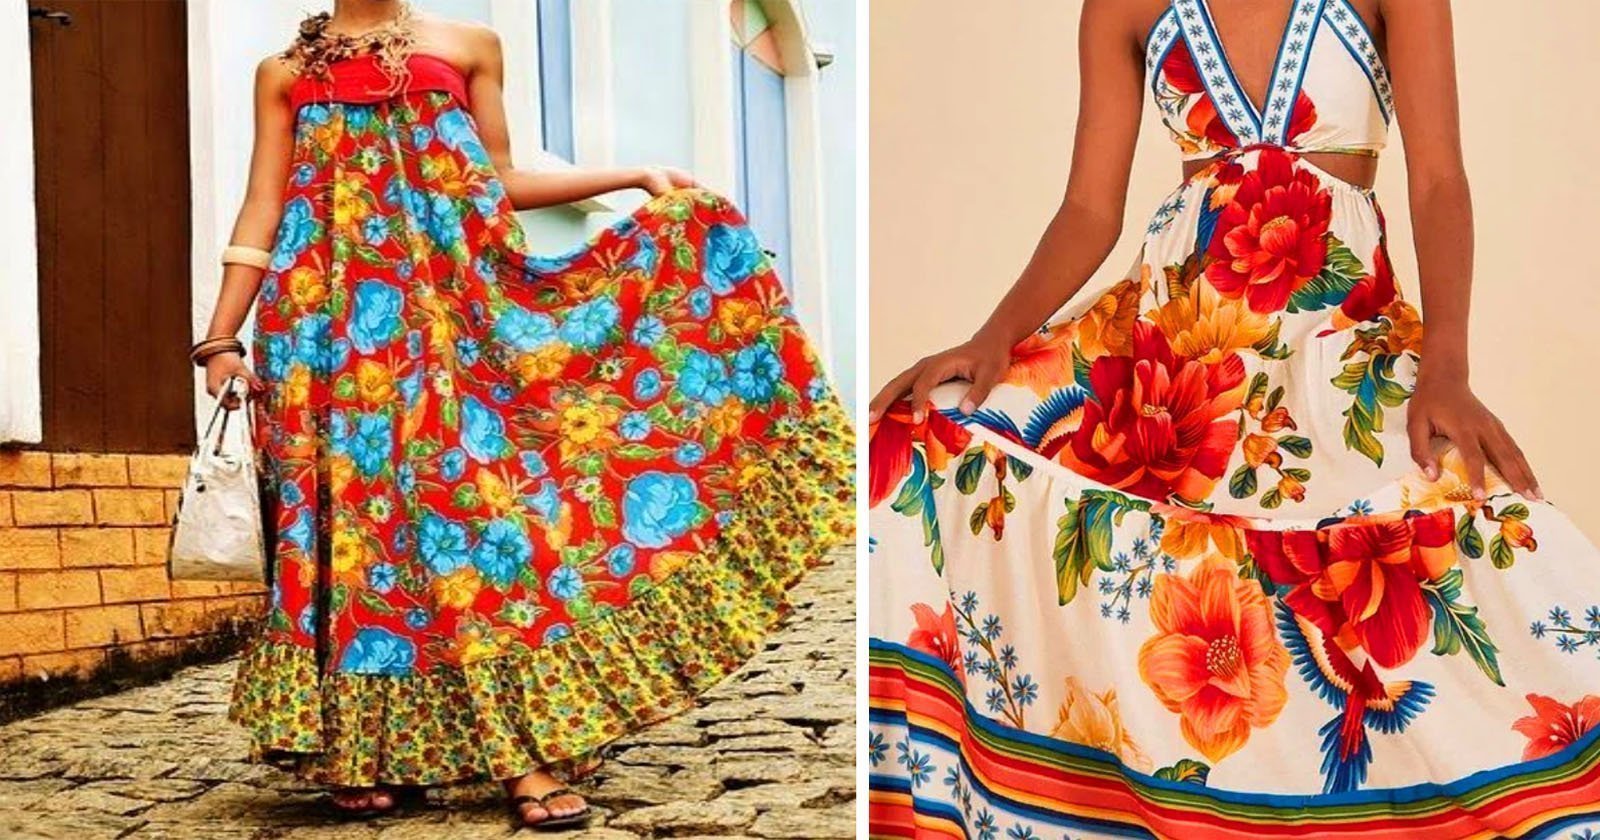 Vestido Longo de Verão com Tecido Chita: Uma peça colorida e vibrante para os dias quentes